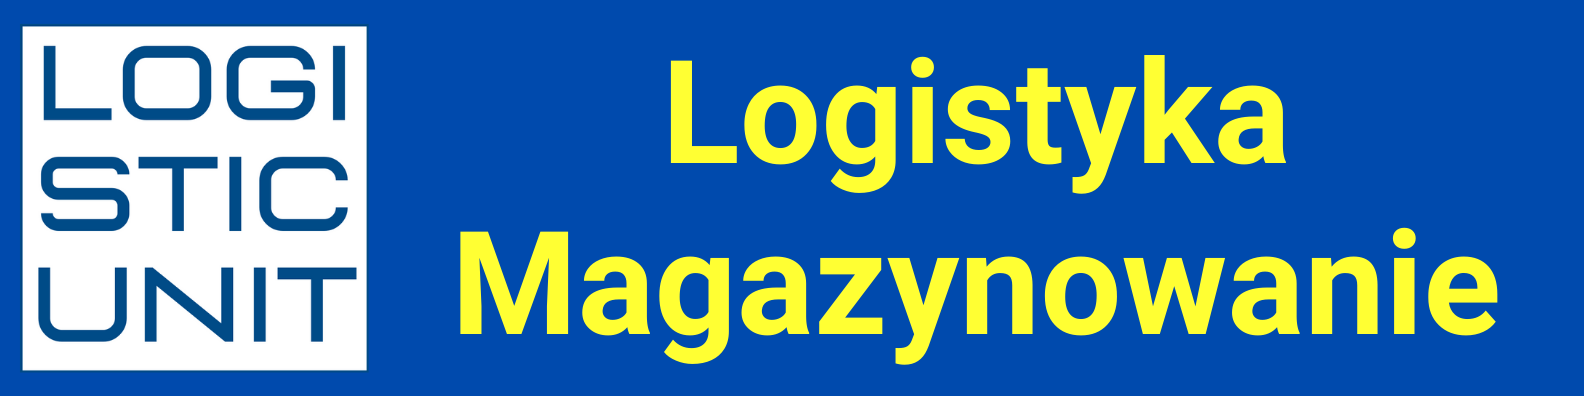 Logistic Unit. Logistyka, magazynowanie, zaopatrzenie techniczne przemysłu